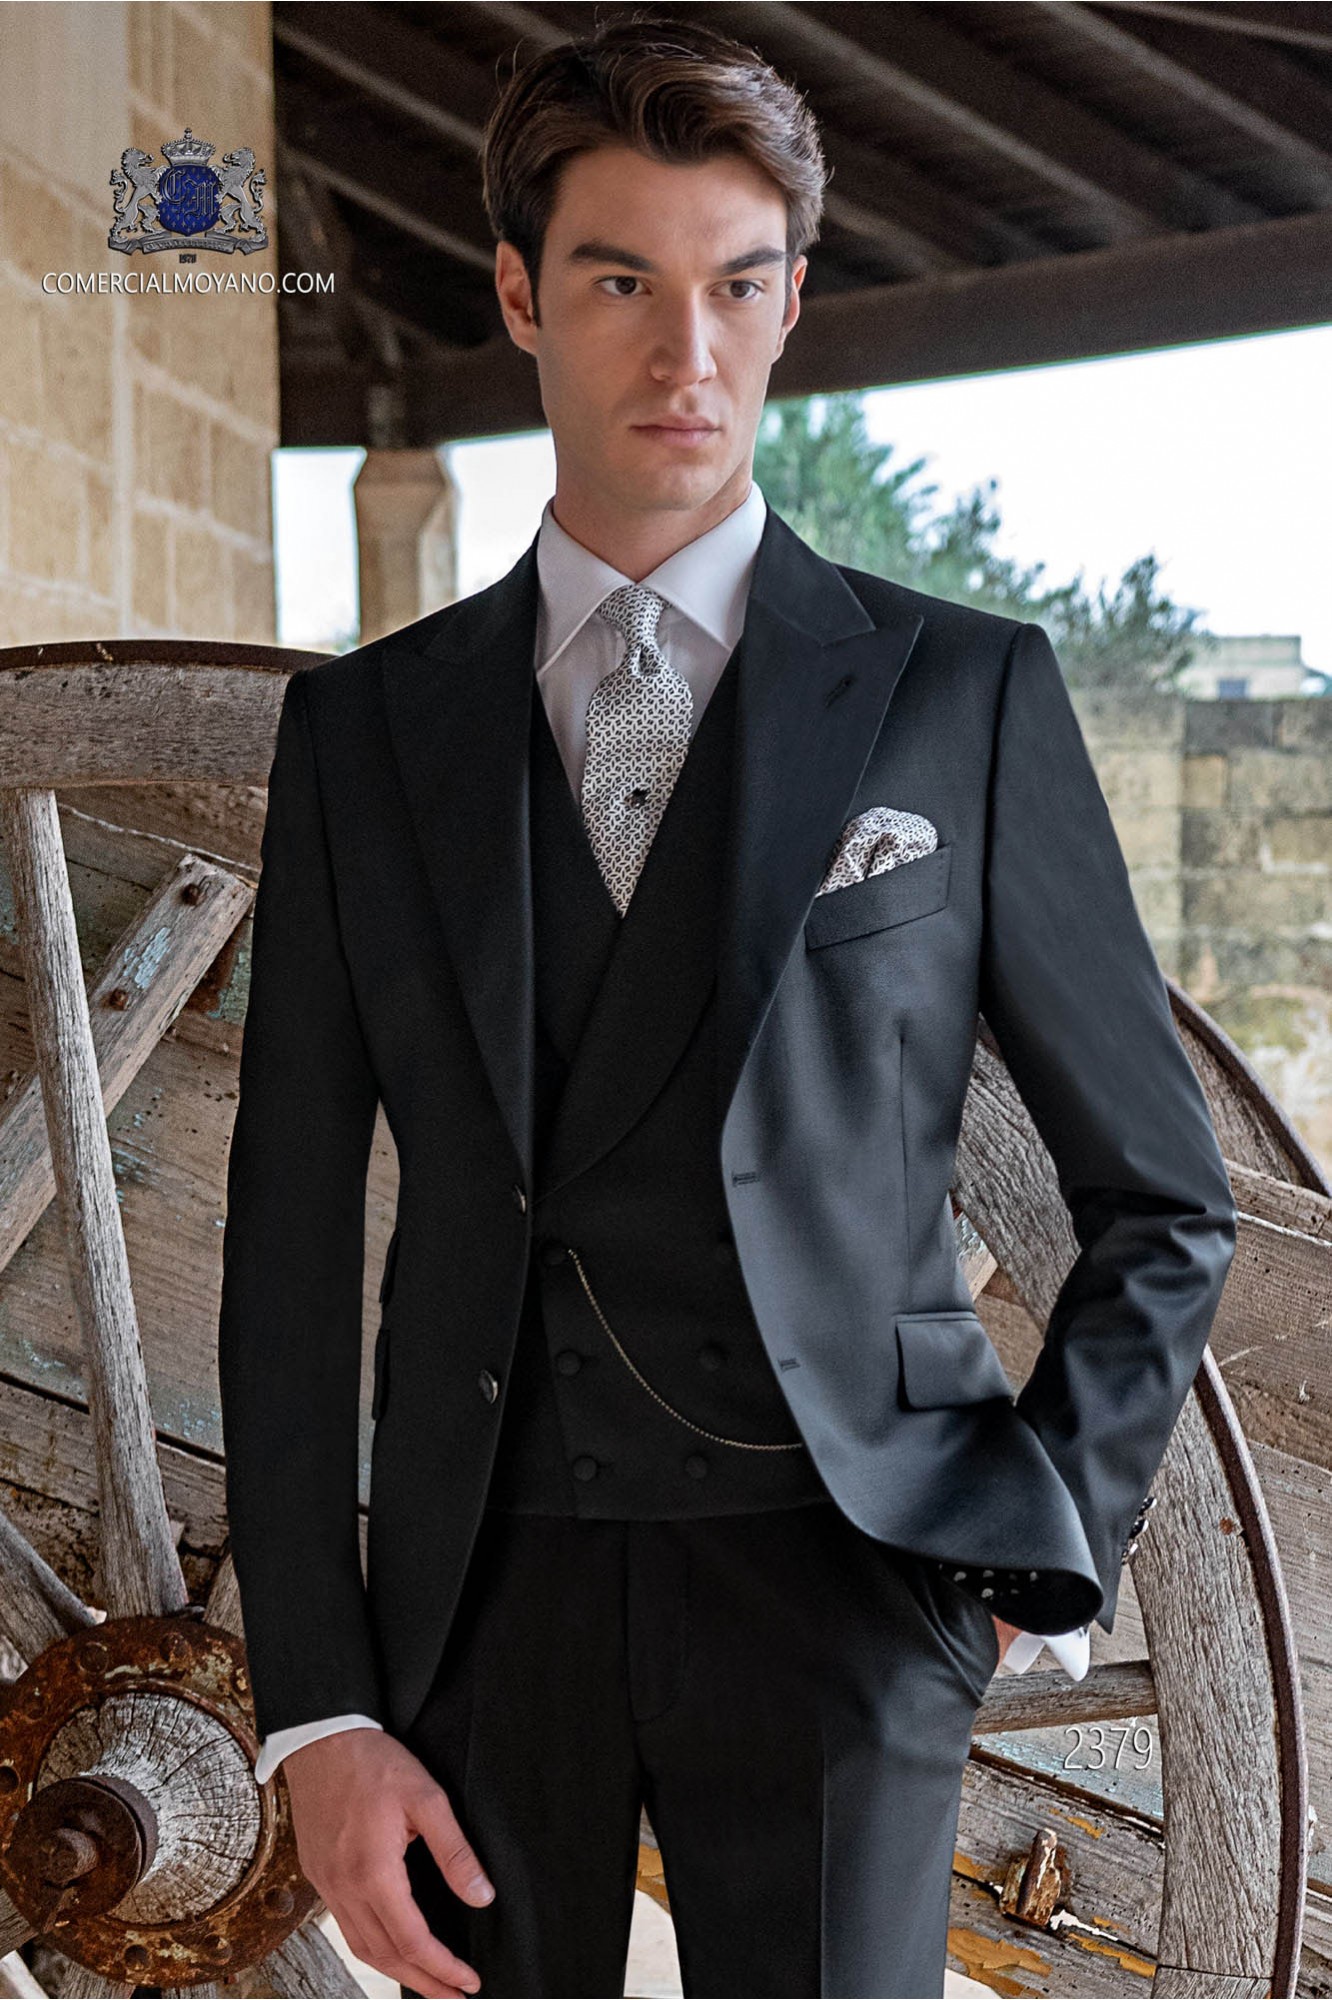 Traje de novio negro italiano moderno. Tejido pura lana modelo: 2379 Mario Moyano colección Gentleman